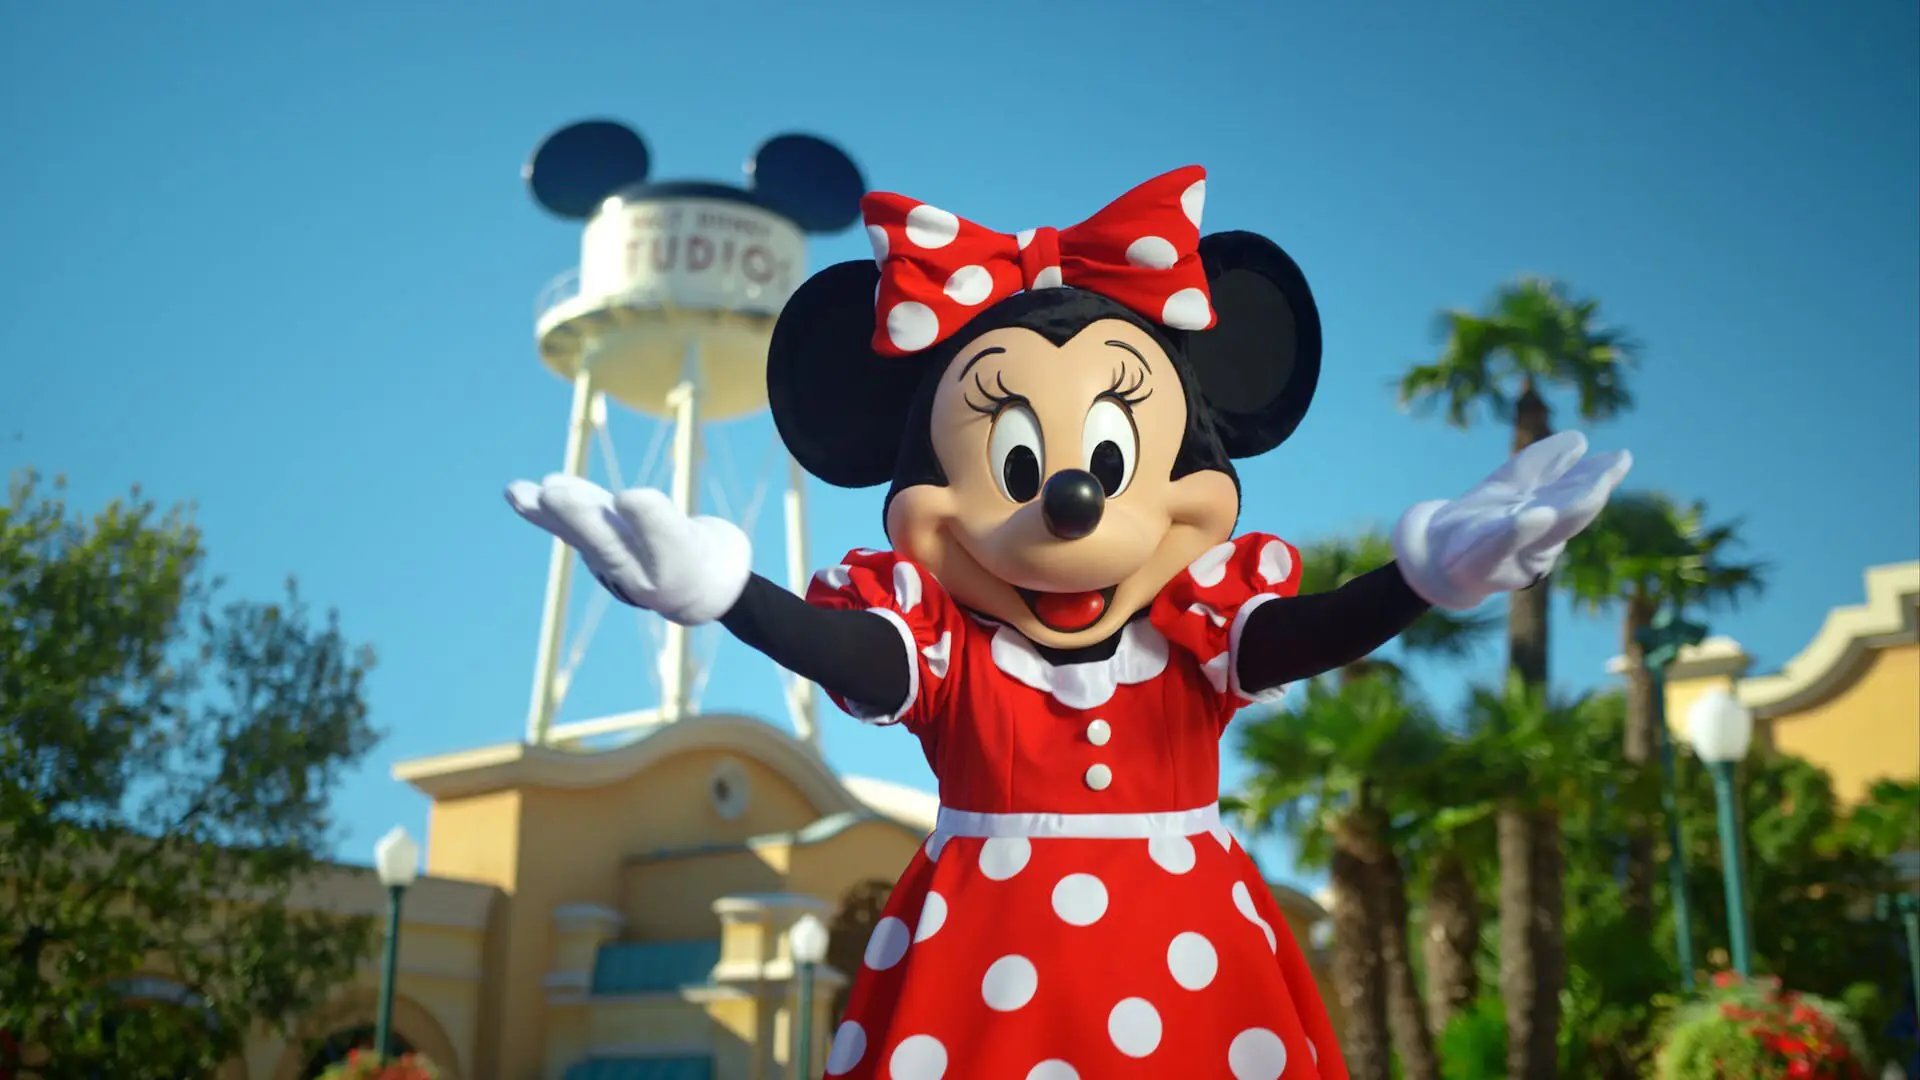 Minnie Mouse im roten Kleid mit weißen Punkten und passender Schleife lädt ein 100 Jahre Disney mitzufeiern